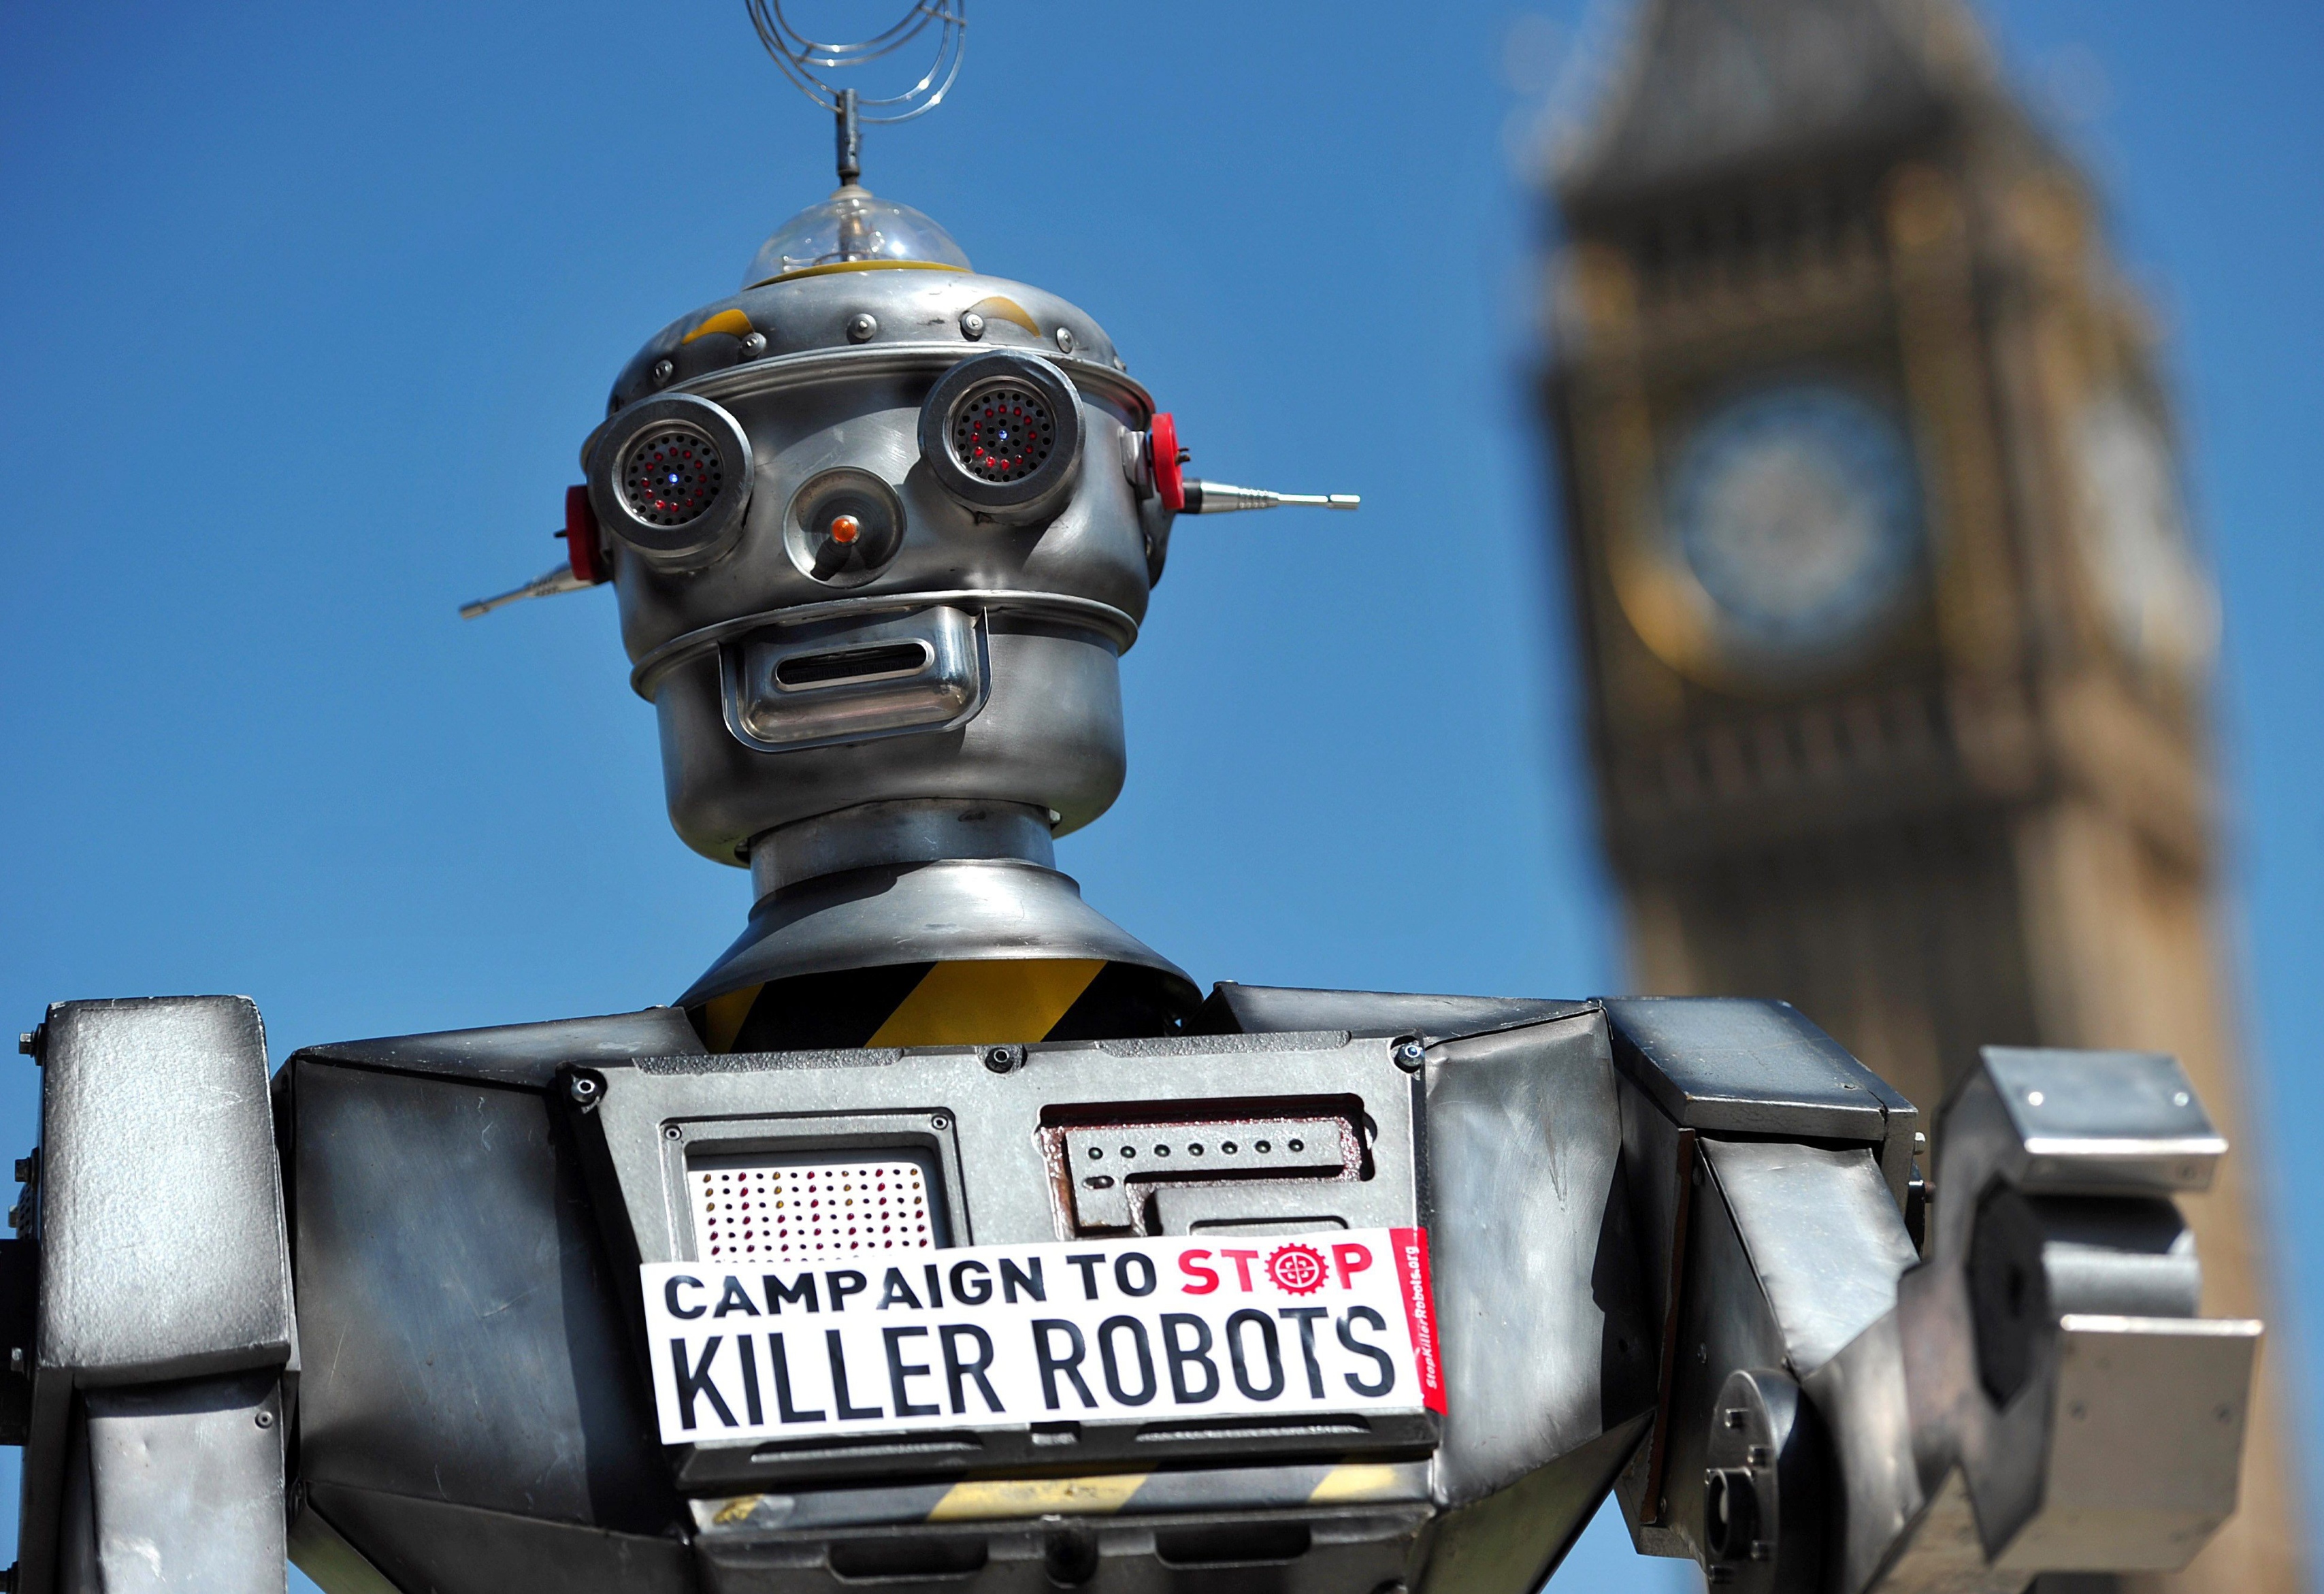 Bekymringen over autonome våpen kom for alvor i 2013. En rapport fra Human Rights Watch ble fulgt opp av «Campaign to Stop Killer Robots». FOTO: CARL COURT/NTB SCANPIX